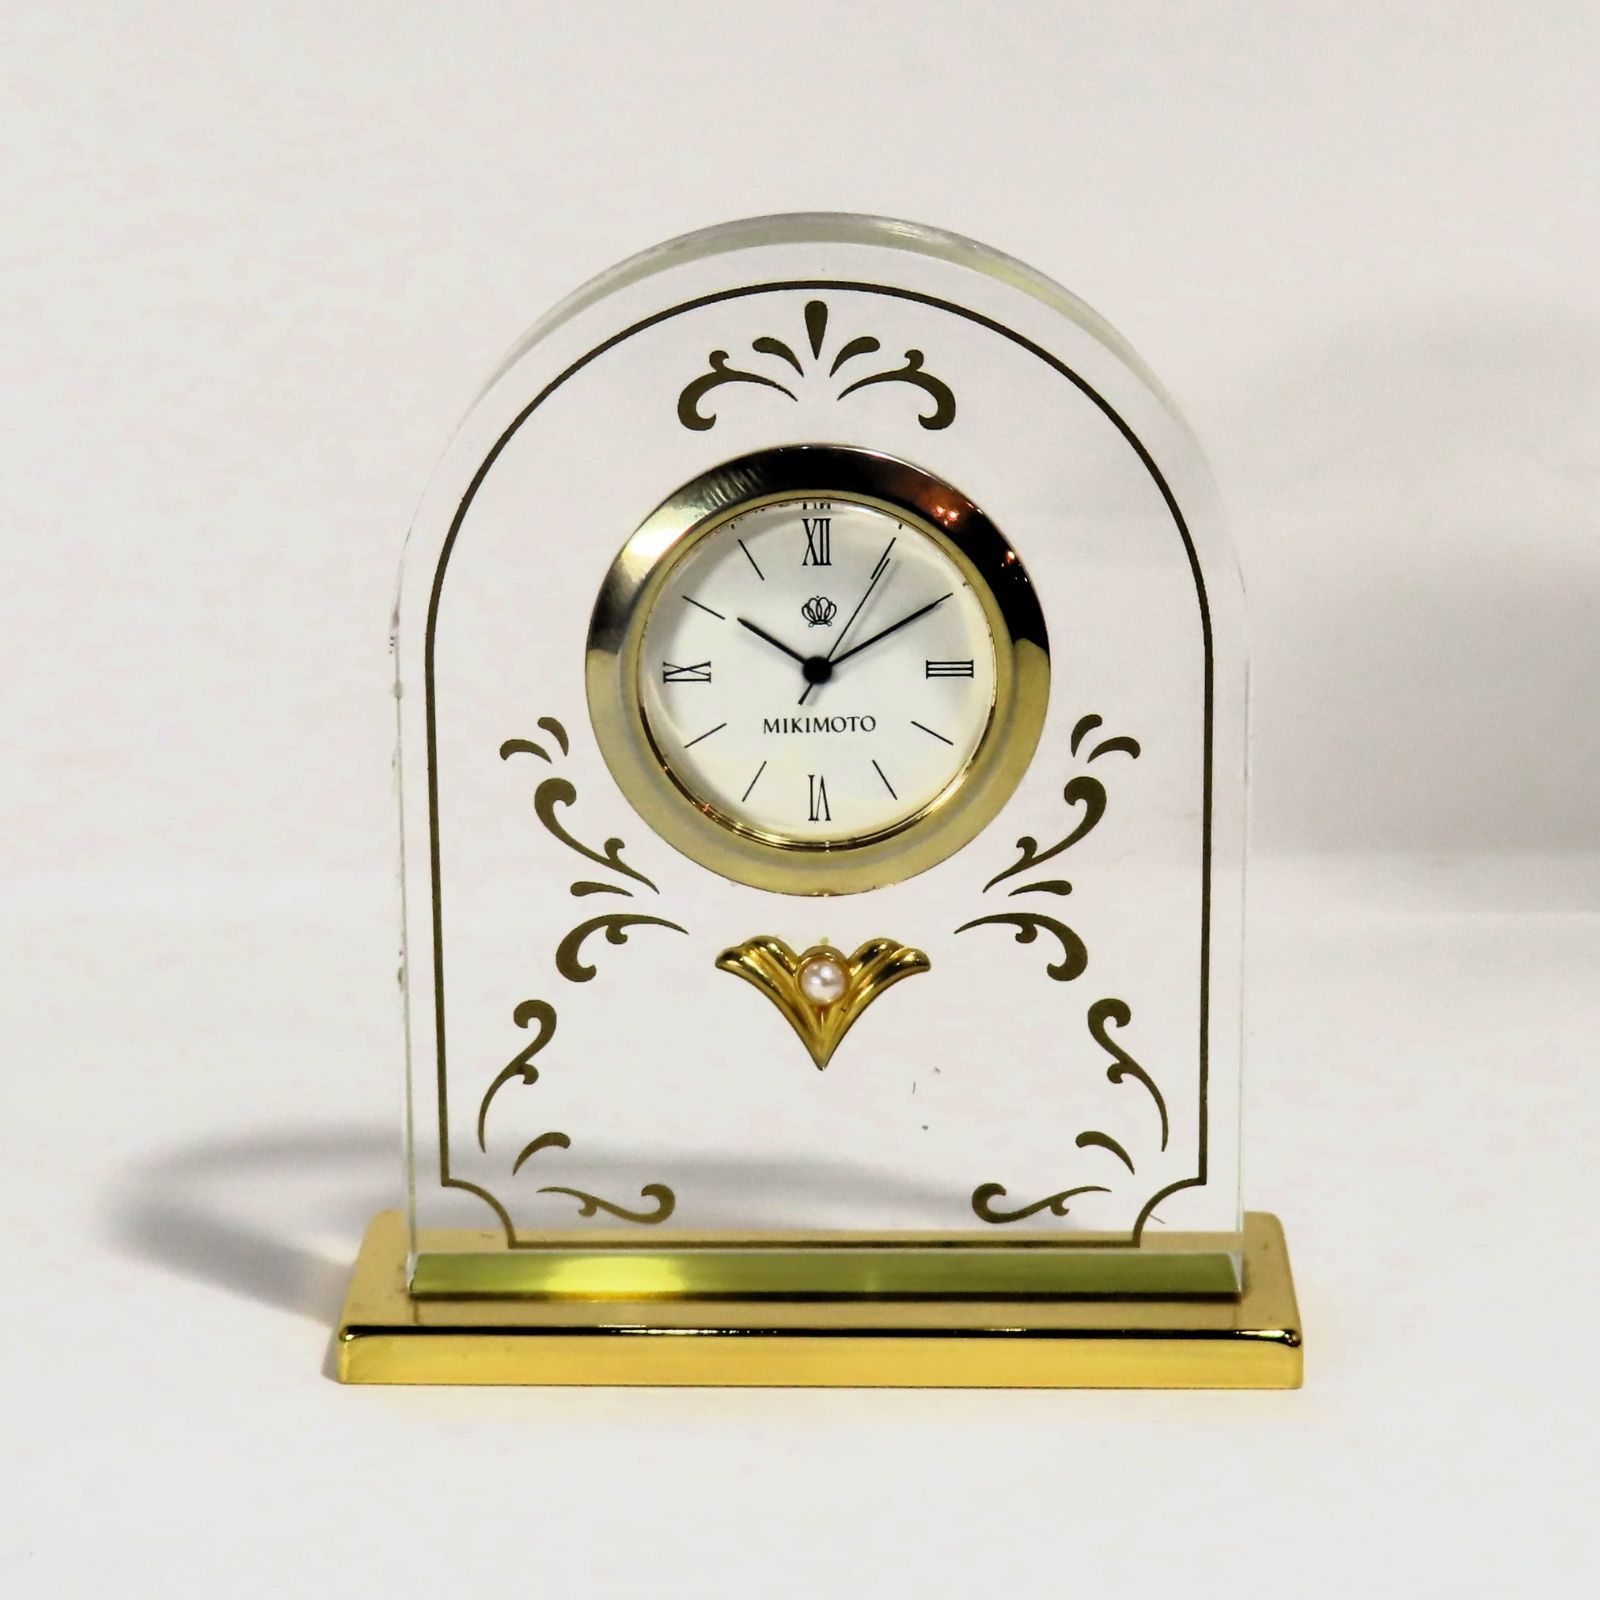 ミキモト 置き時計 品質保証 - インテリア時計